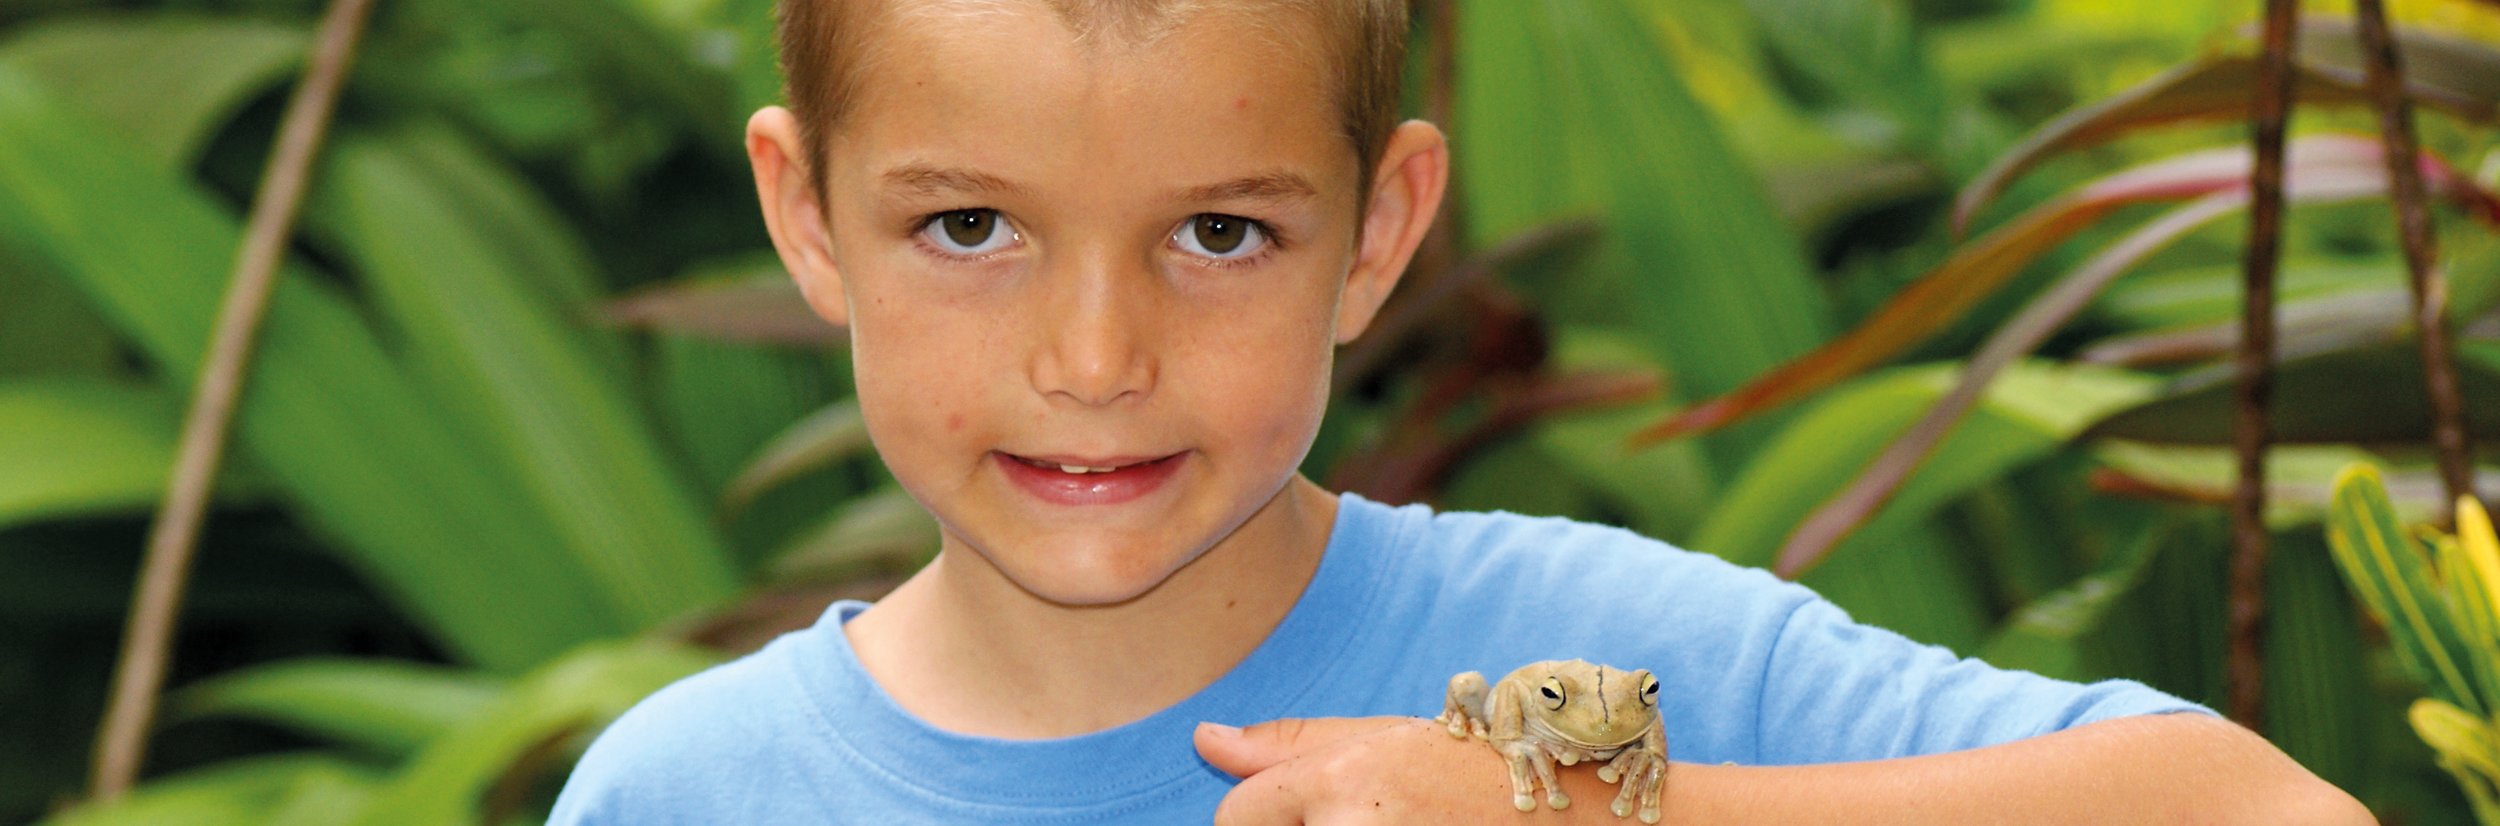 Costa Rica Familienreise - Junge mit Frosch